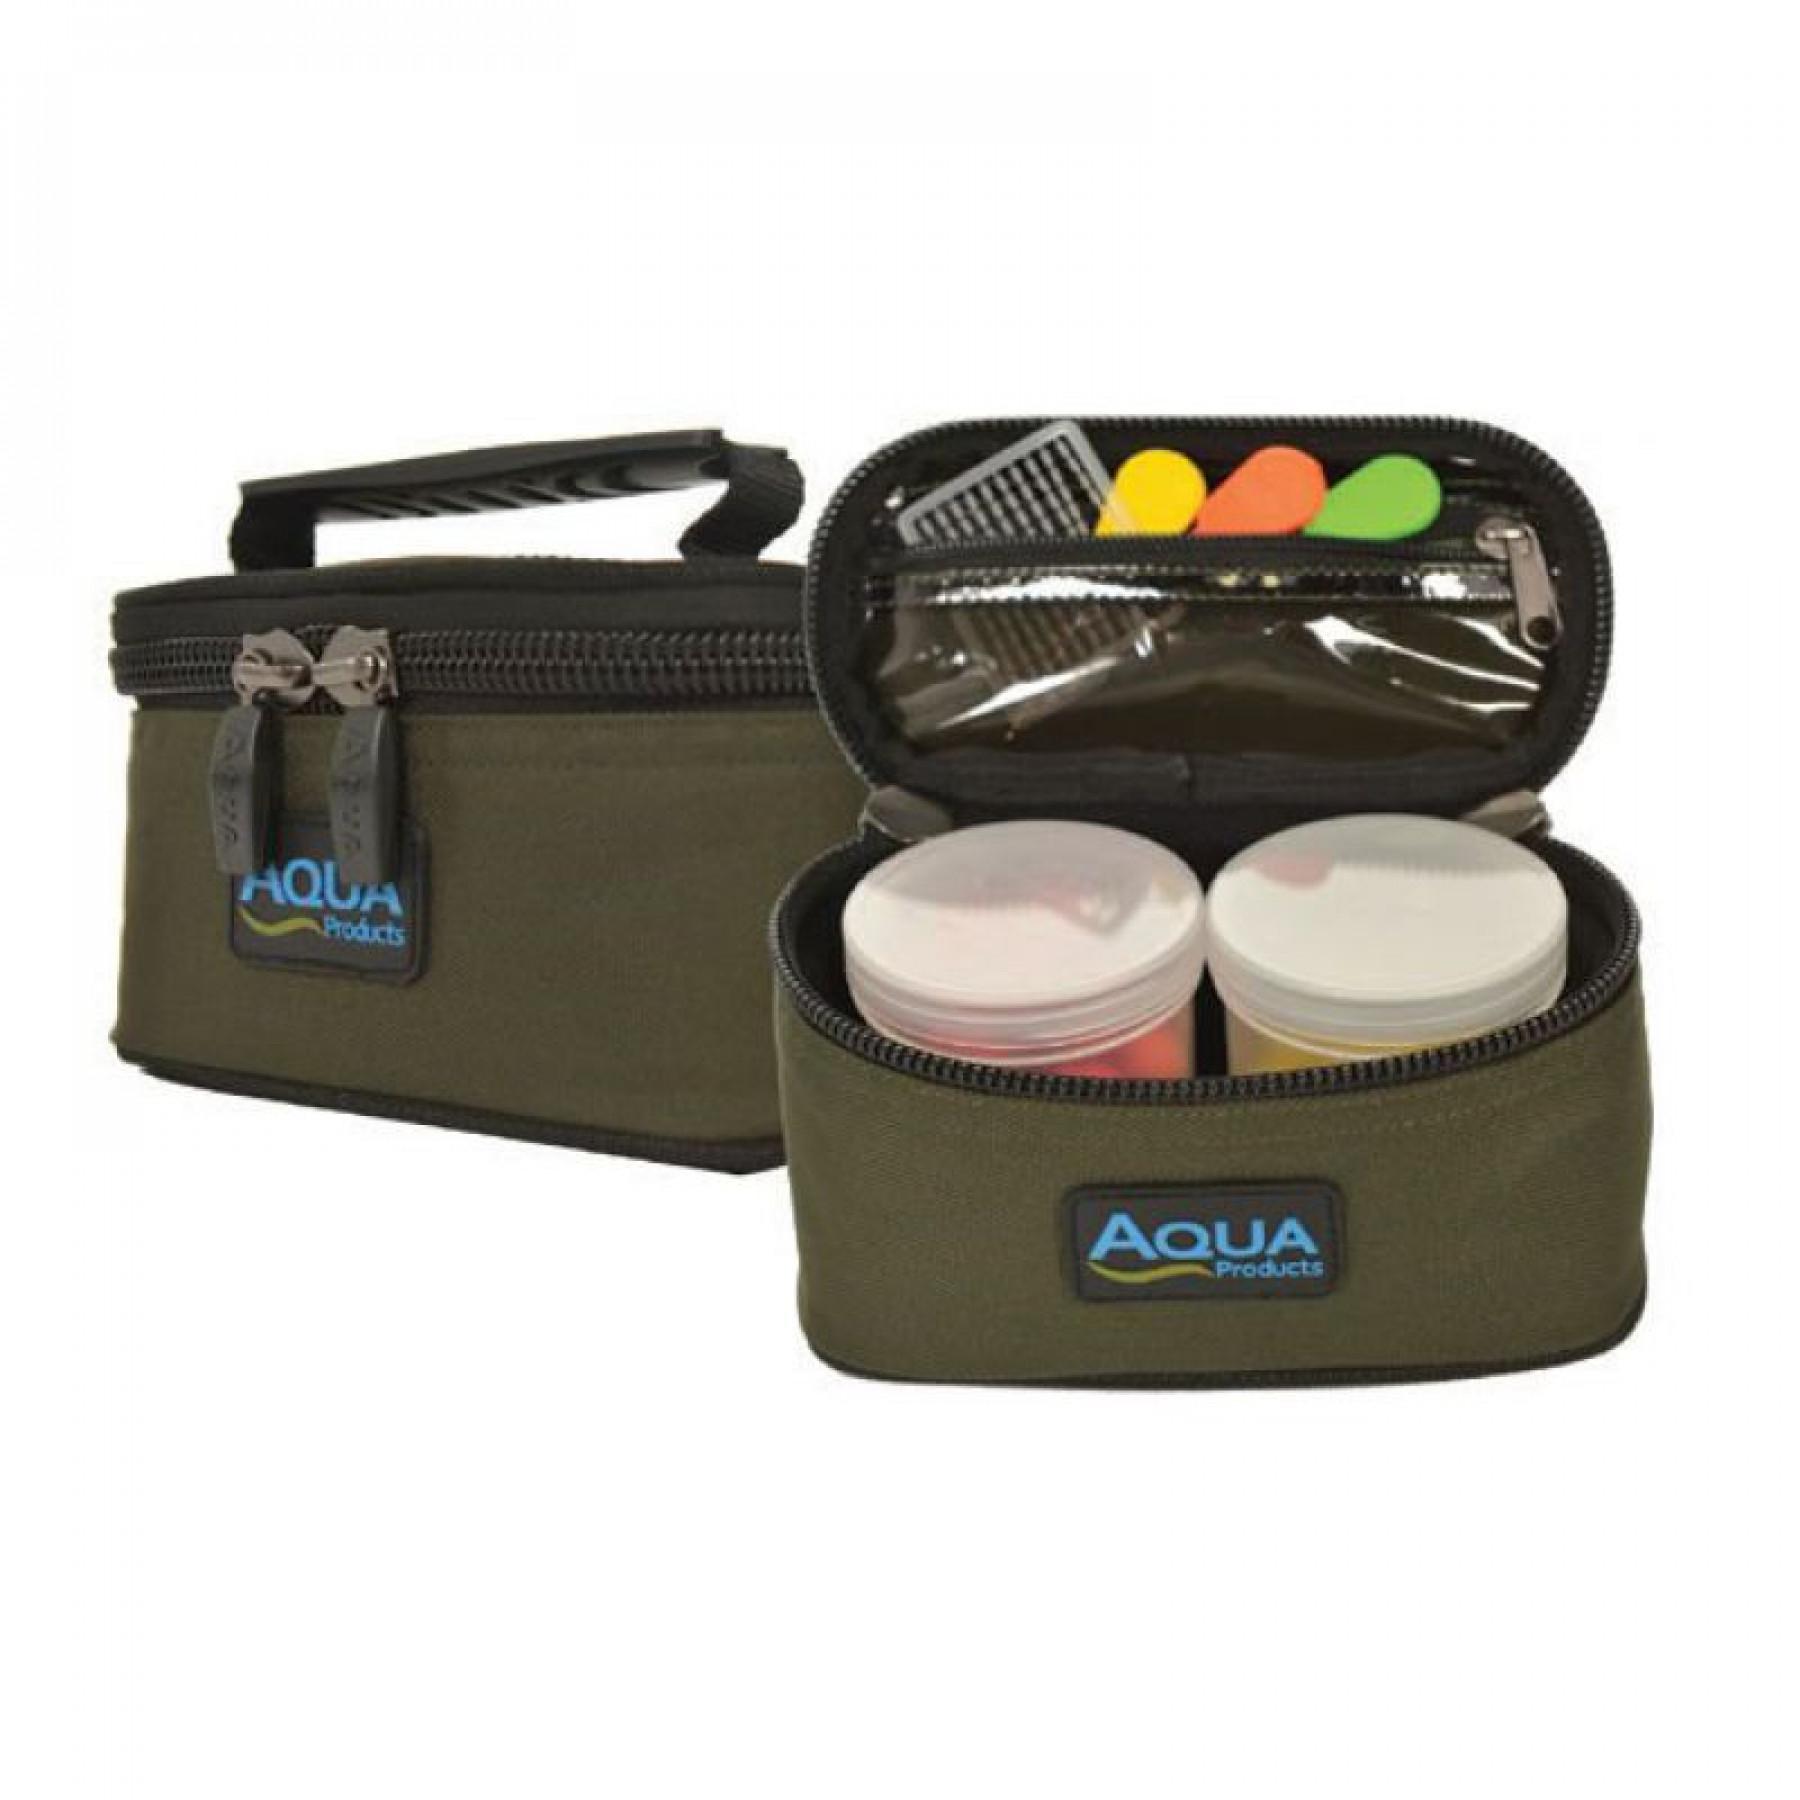 Aqua esches roving kit